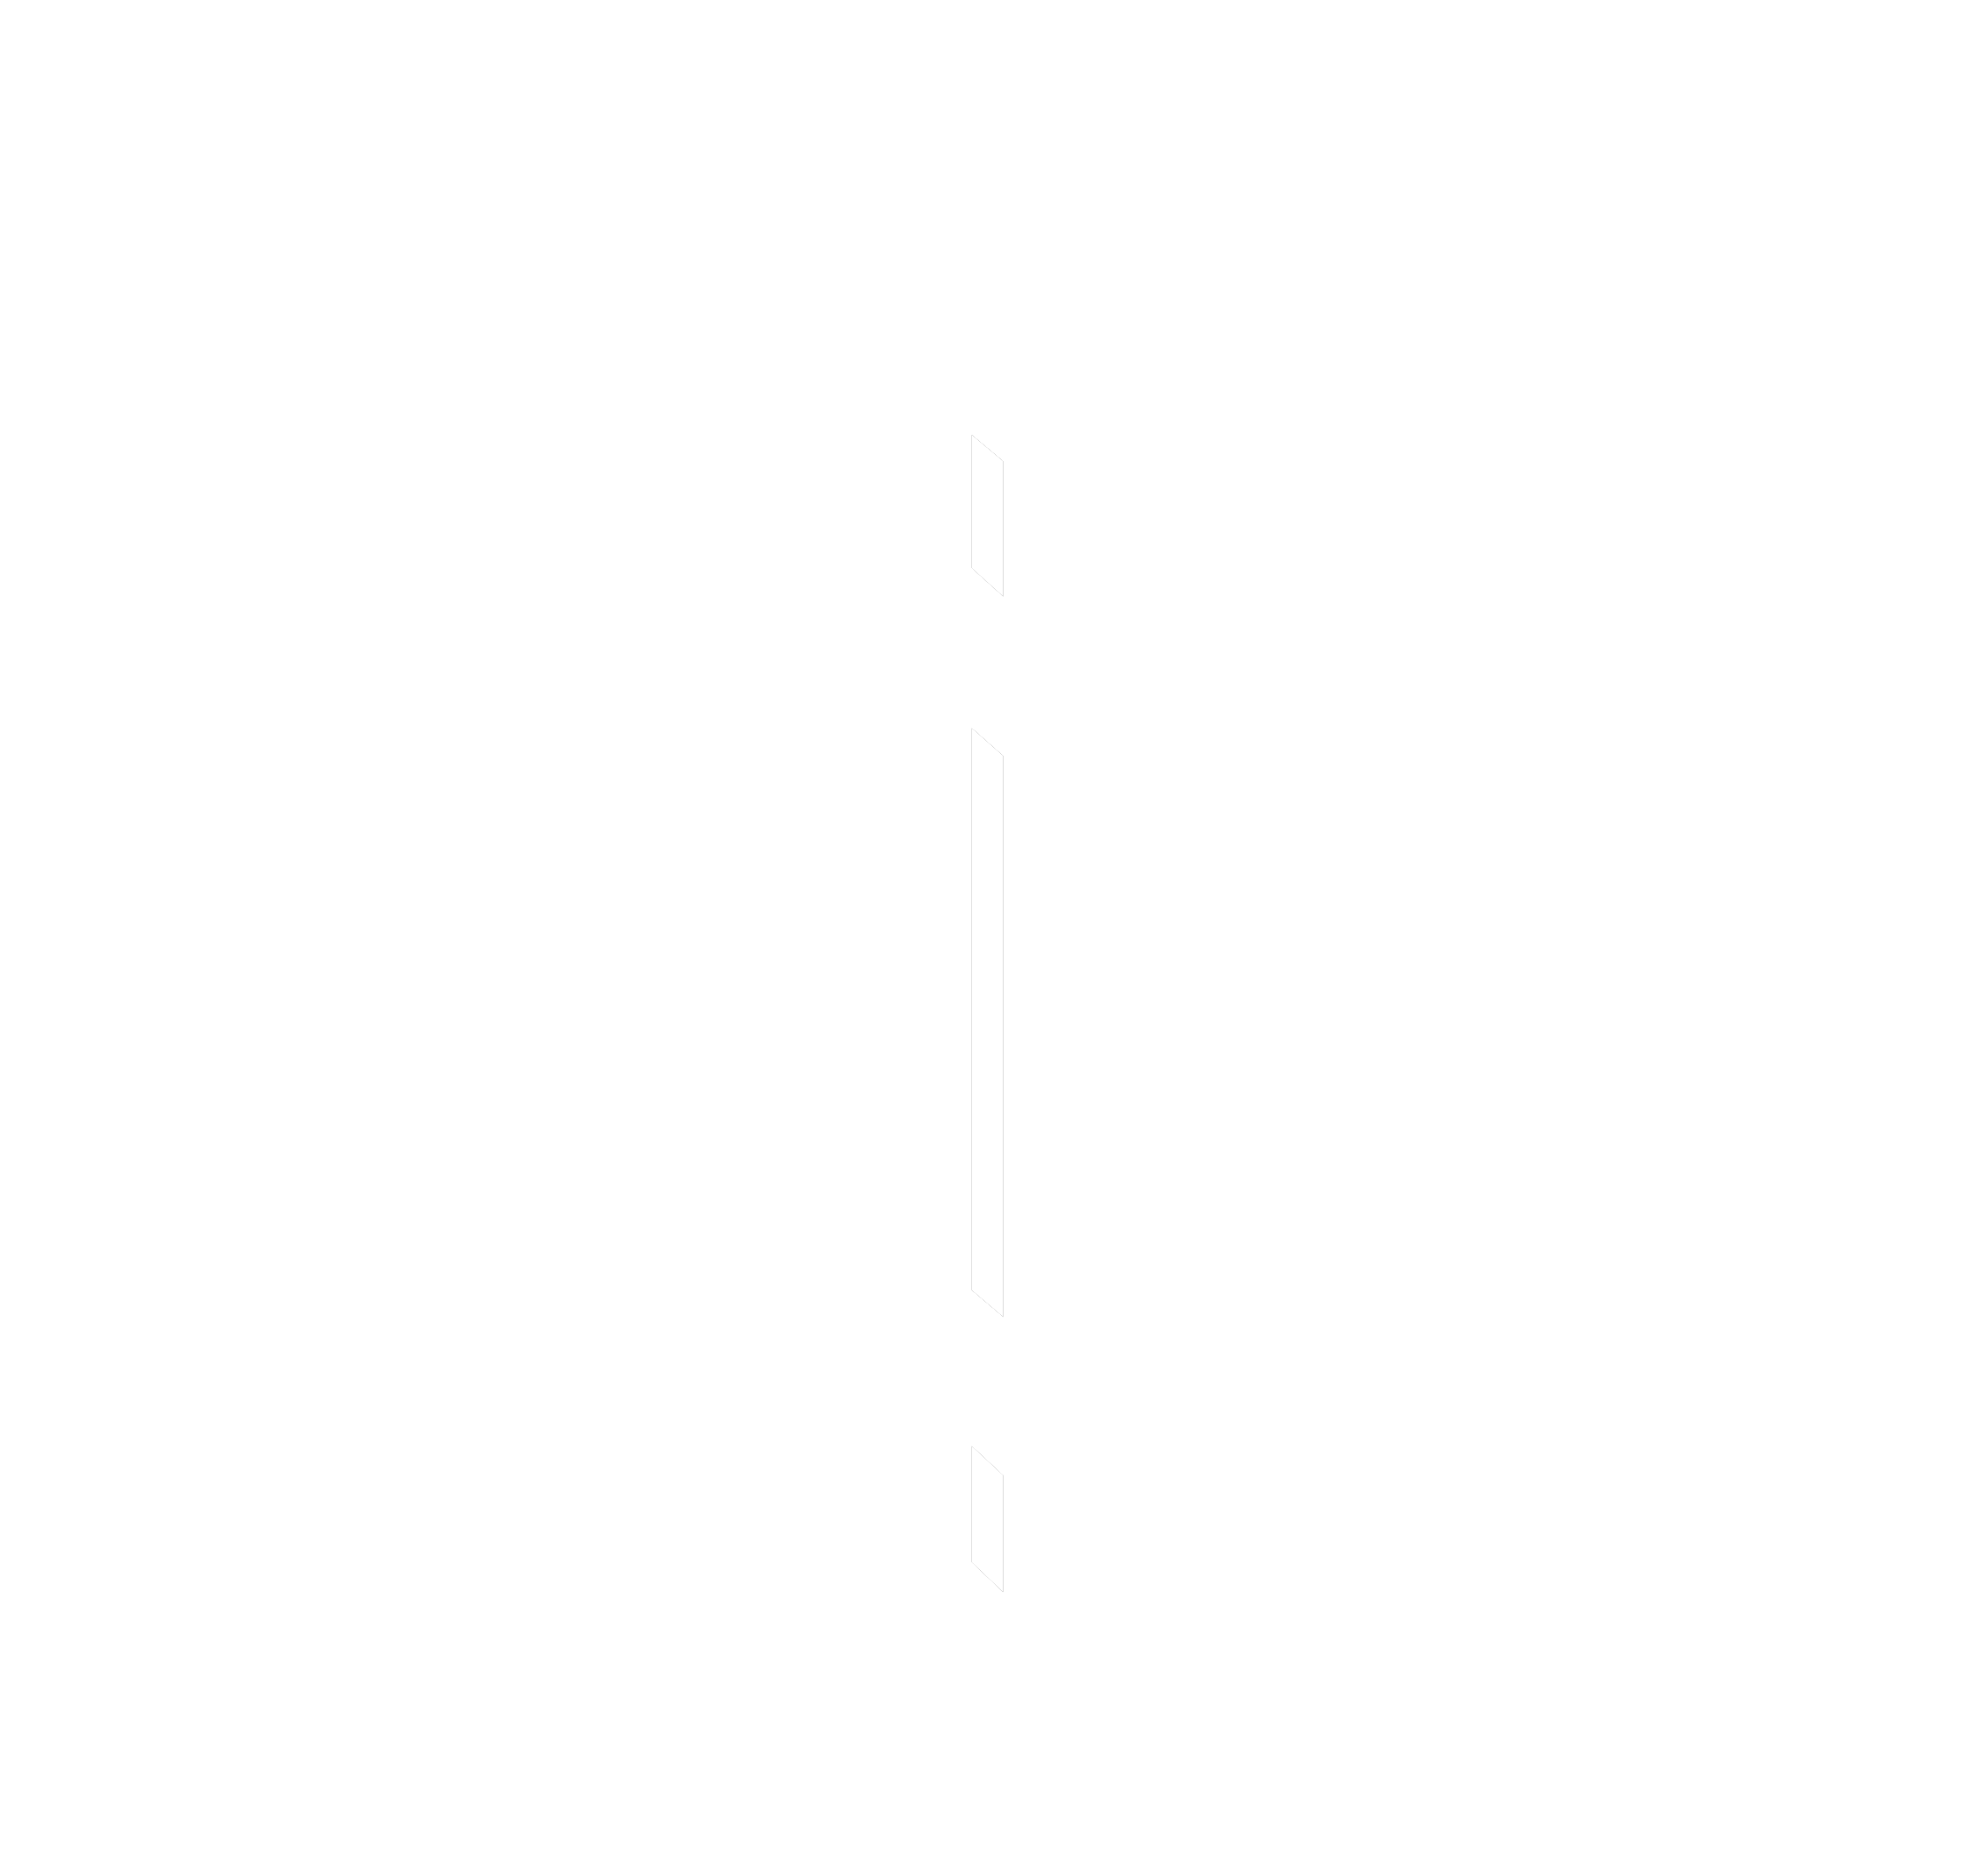 Svensk medicinteknisk förening